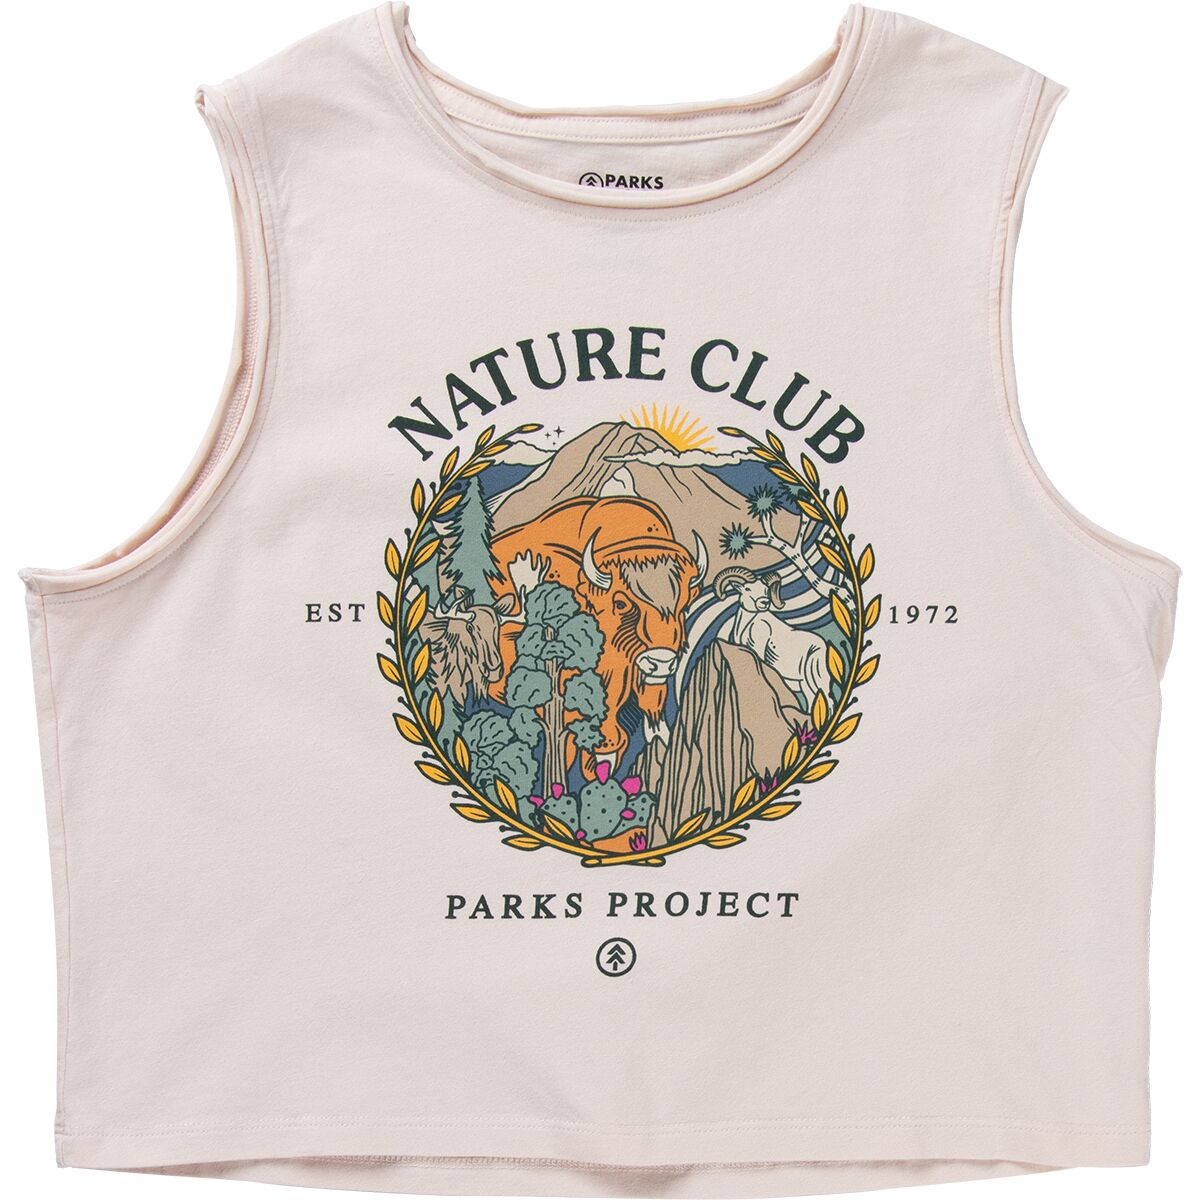 Nature Club Members Tank Top - Women